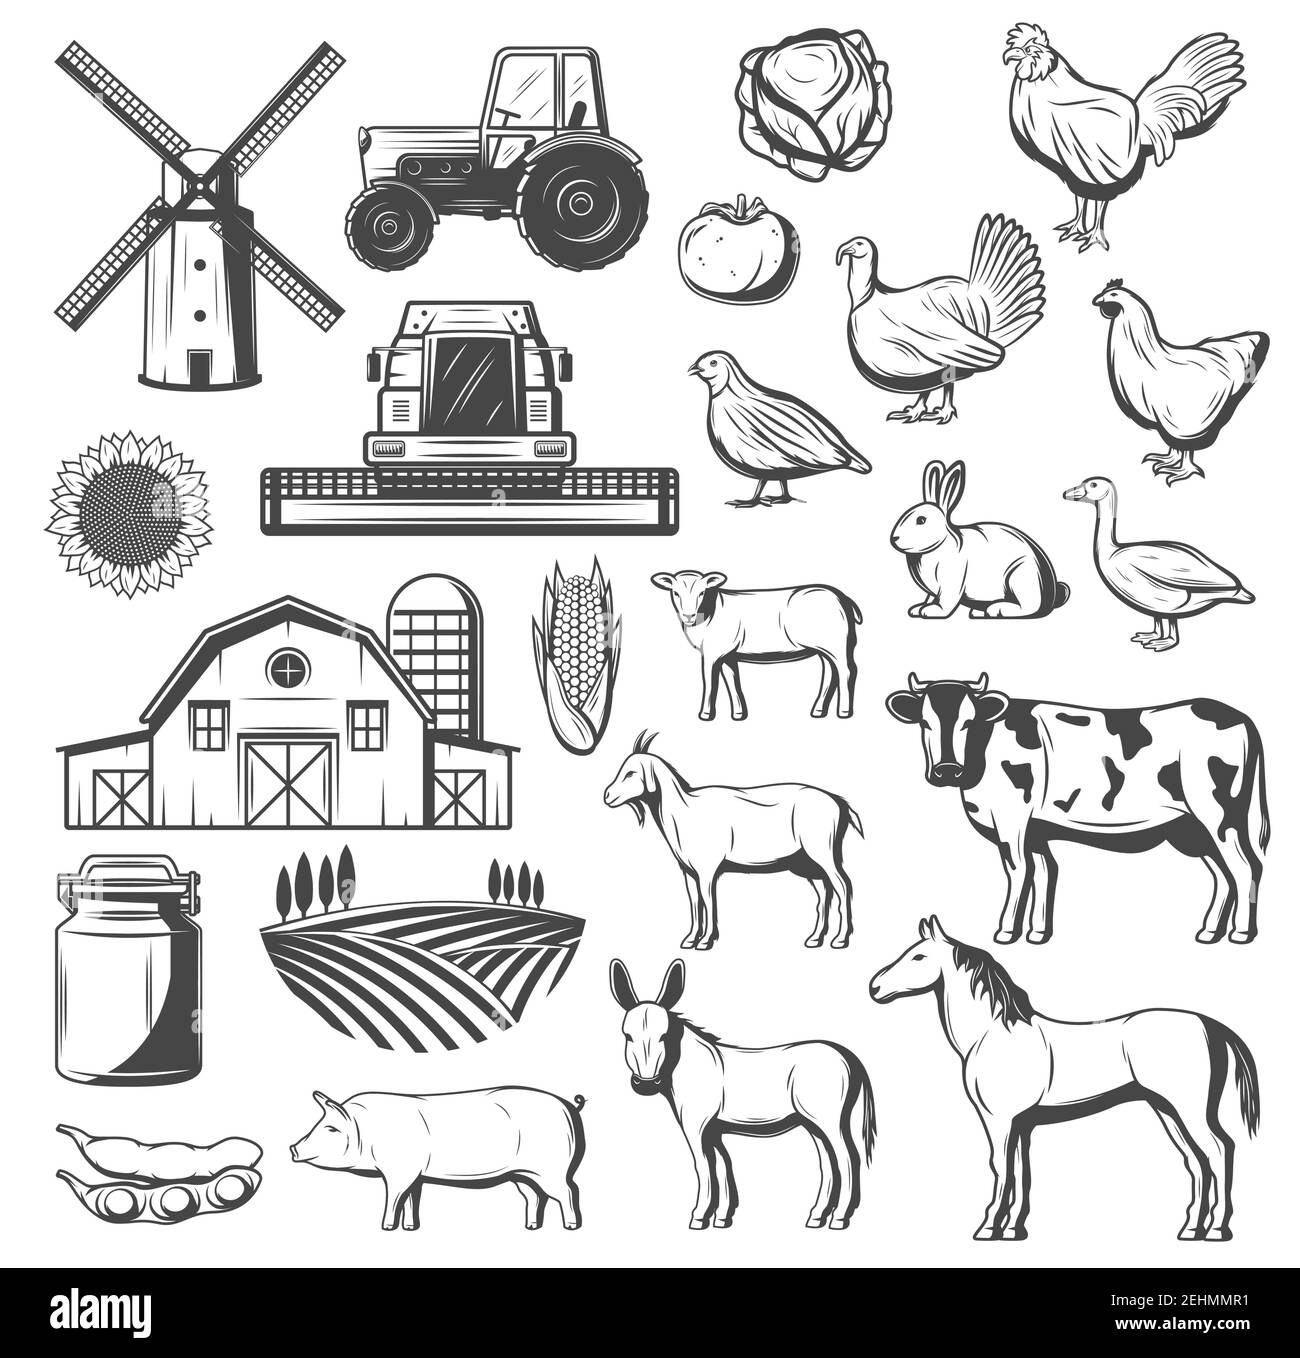 Icone di agricoltura, agricoltura e bestiame. Trattore vettoriale, mulino a vento o granaio e campo arabile, animali da fattoria mucca e cavallo, maiale e pollo, tacchino, d Illustrazione Vettoriale